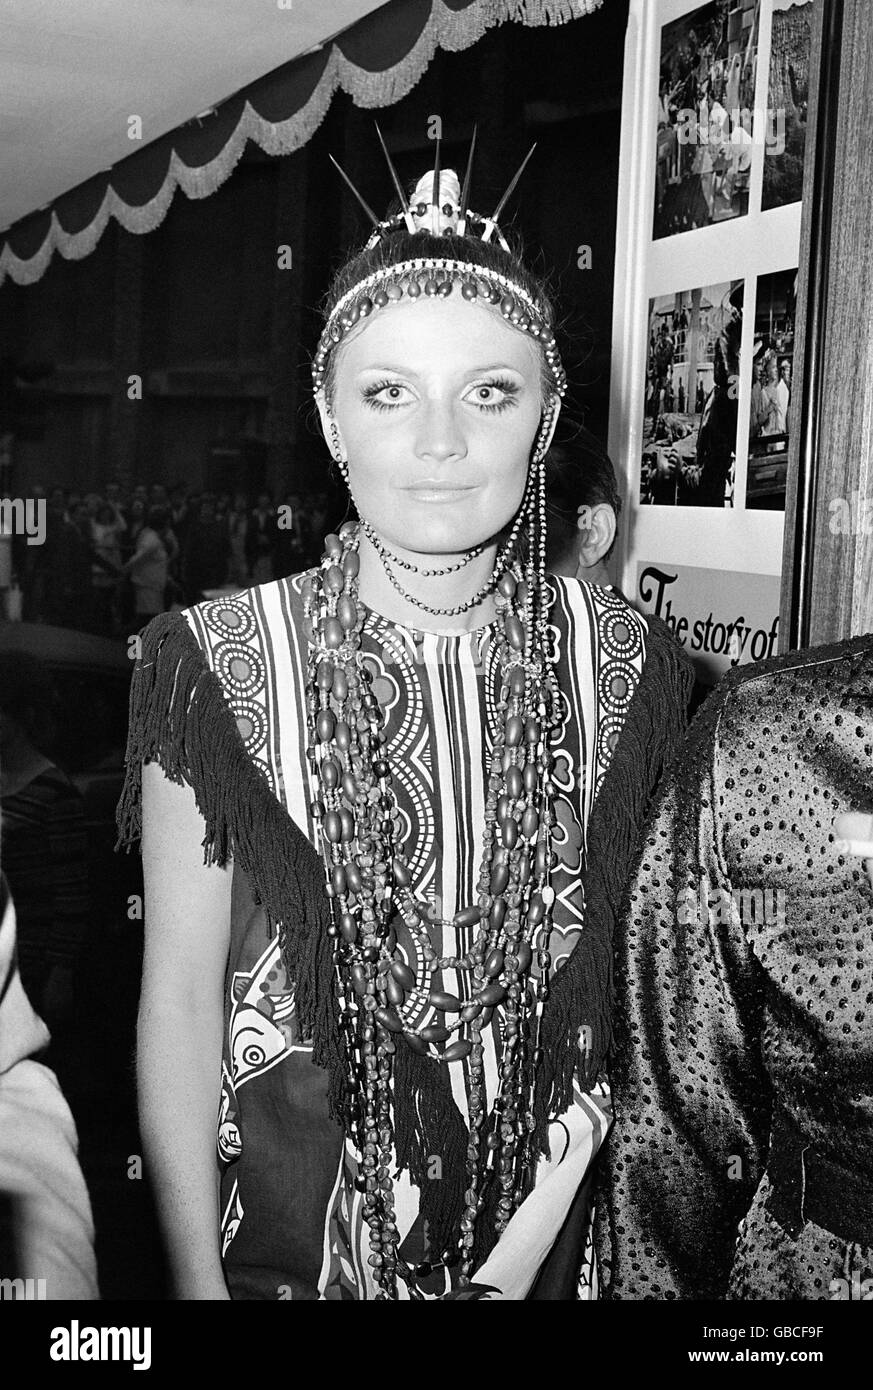 La chanteuse Sandie Shaw est photographiée dans une tenue javanaise multicolore lorsqu'elle a assisté à la première de gala au Astoria Cinerama Theatre à Londres. Banque D'Images